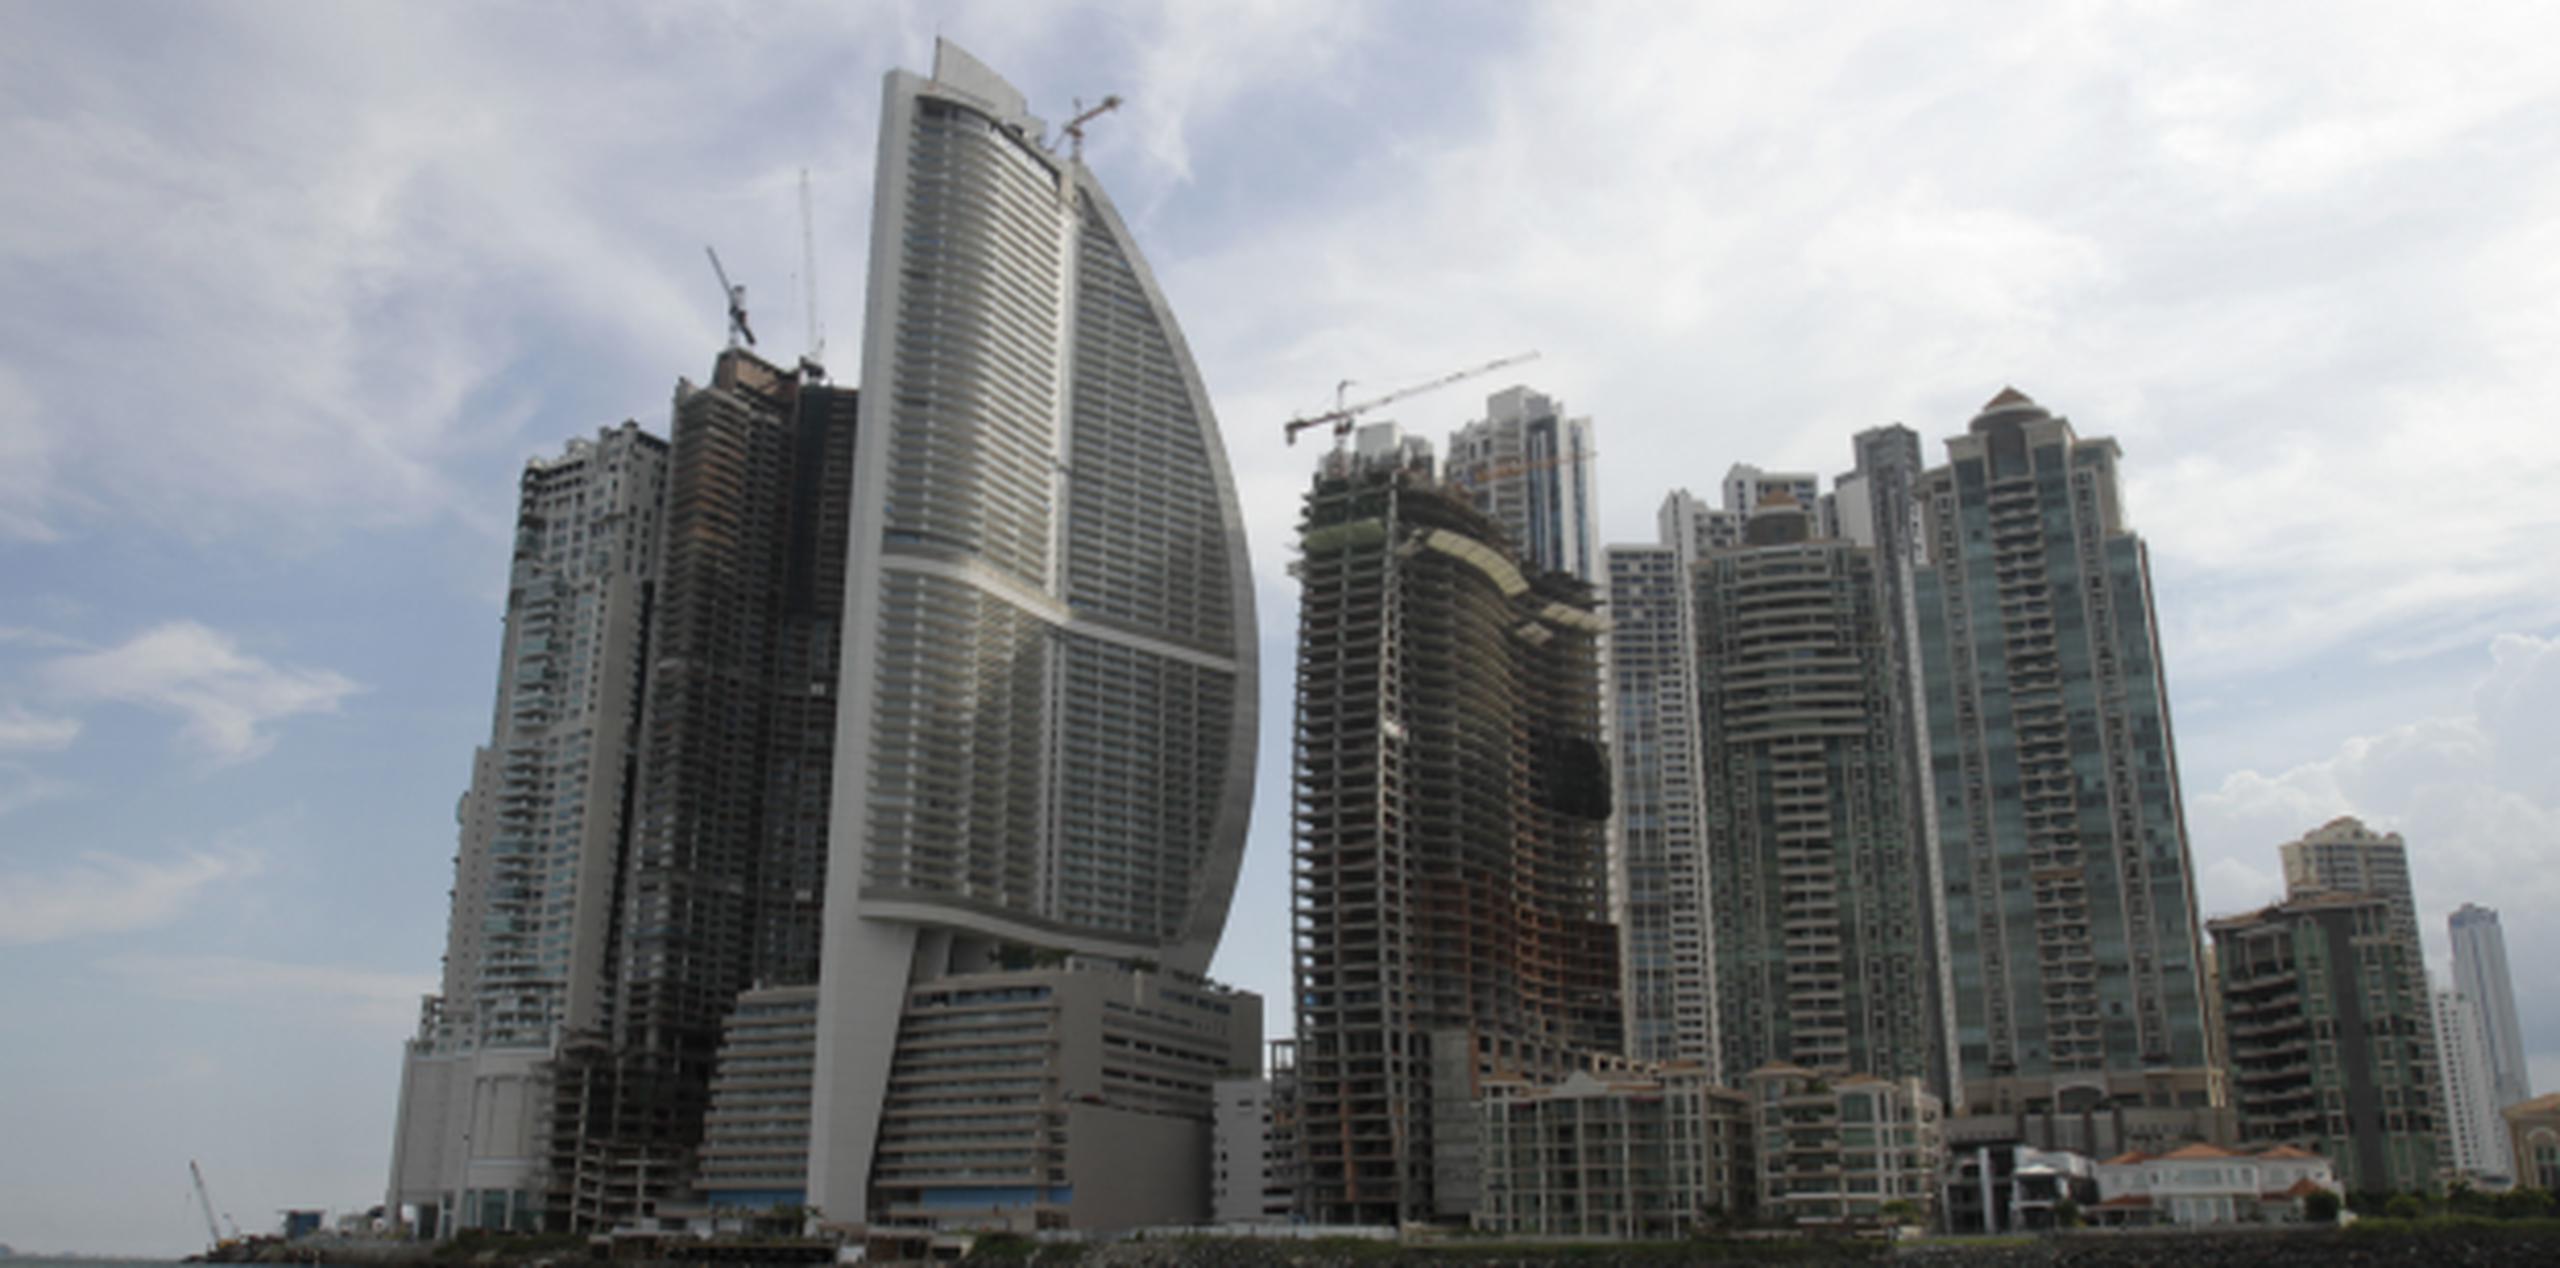 El hotel Trump de Panamá (tercer edificio desde la izquierda) consta de 70 pisos y muestra una forma de vela henchida por el viento. (AP)